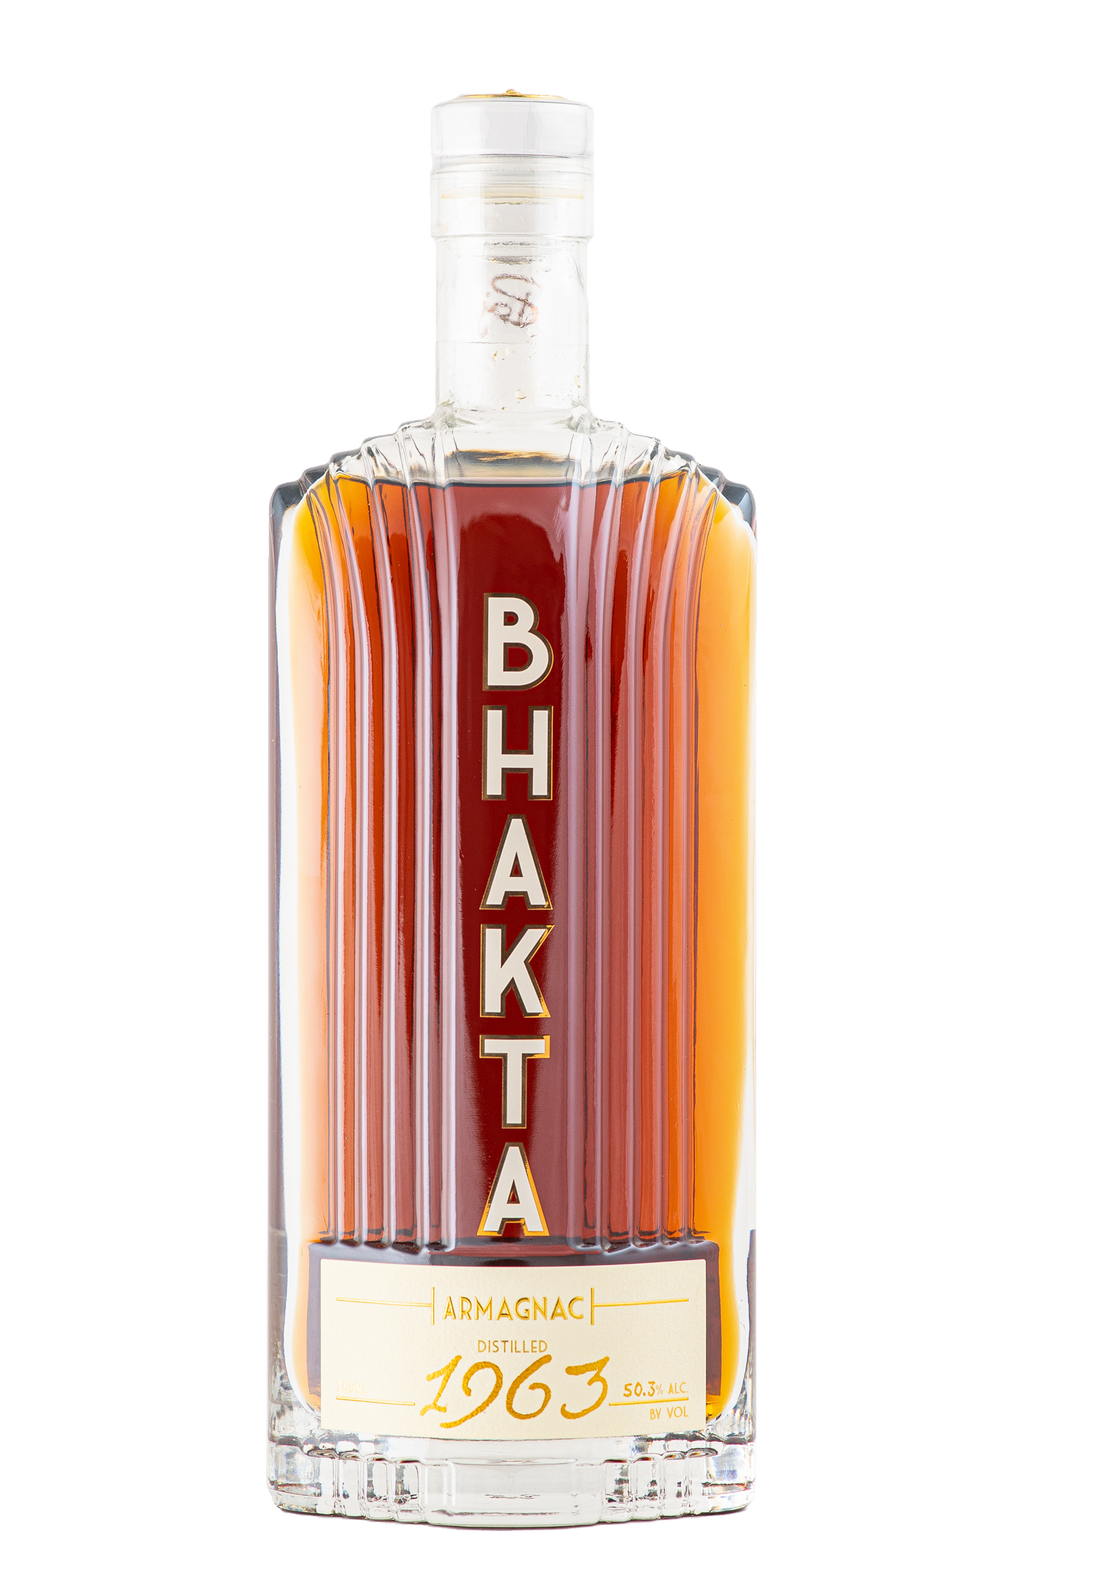 Vintage Profile: BHAKTA 1963 Armagnac